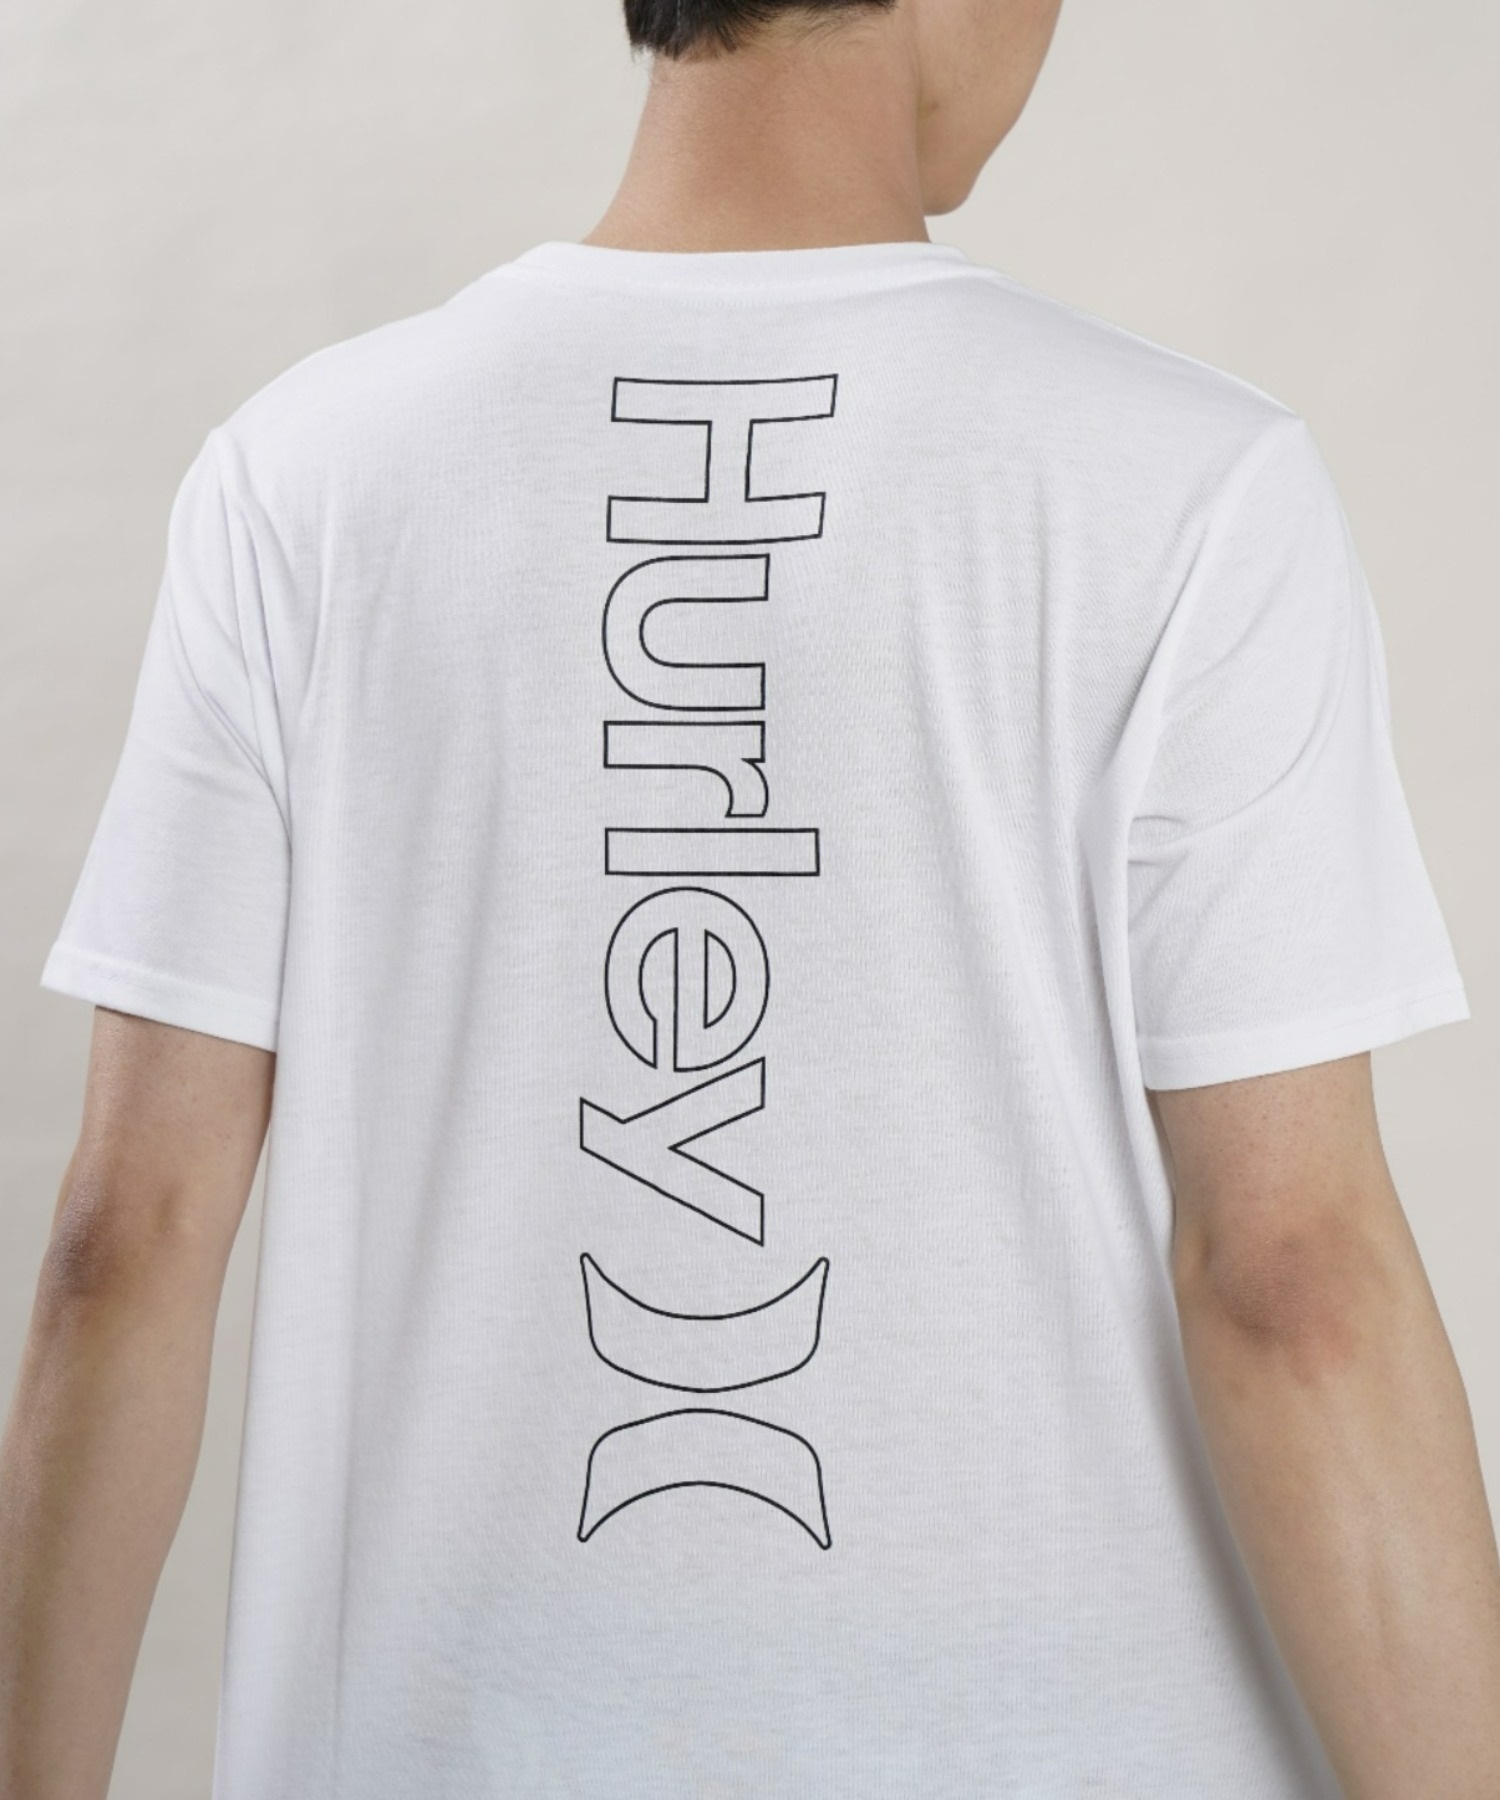 Hurley ハーレー MSS2200054 メンズ 半袖 Tシャツ ルーズシルエット バックプリントTシャツ ムラサキスポーツ限定(WHT-M)